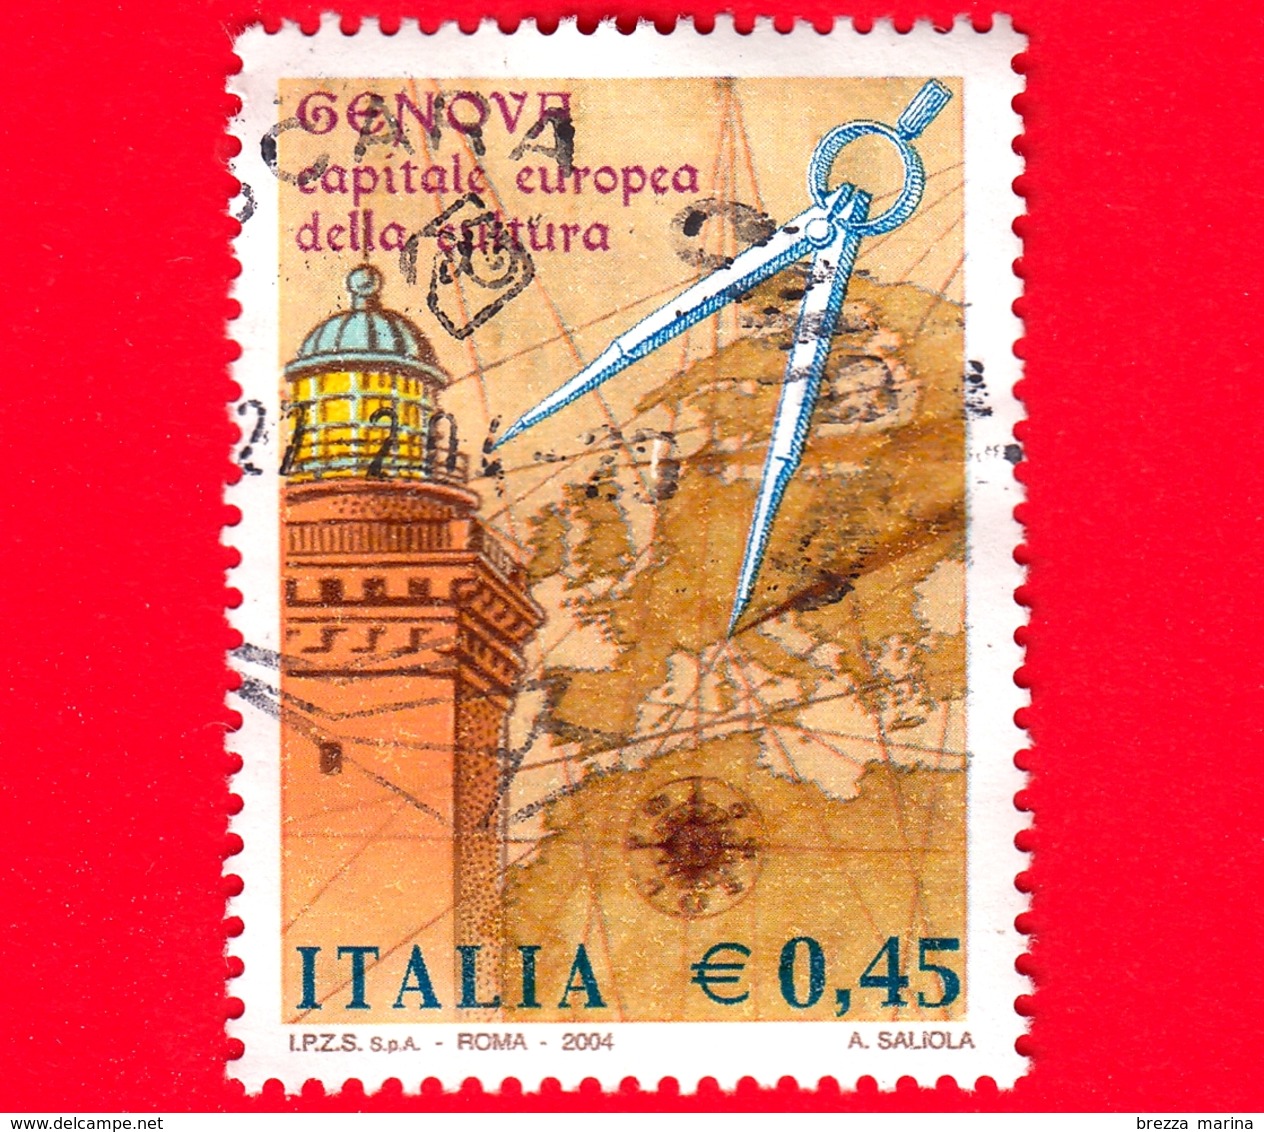 ITALIA - Usato - 2004 - Genova Capitale Europea Della Cultura - Lanterna Di Genova, Mappa E Compasso - 0,45 - 2001-10: Used